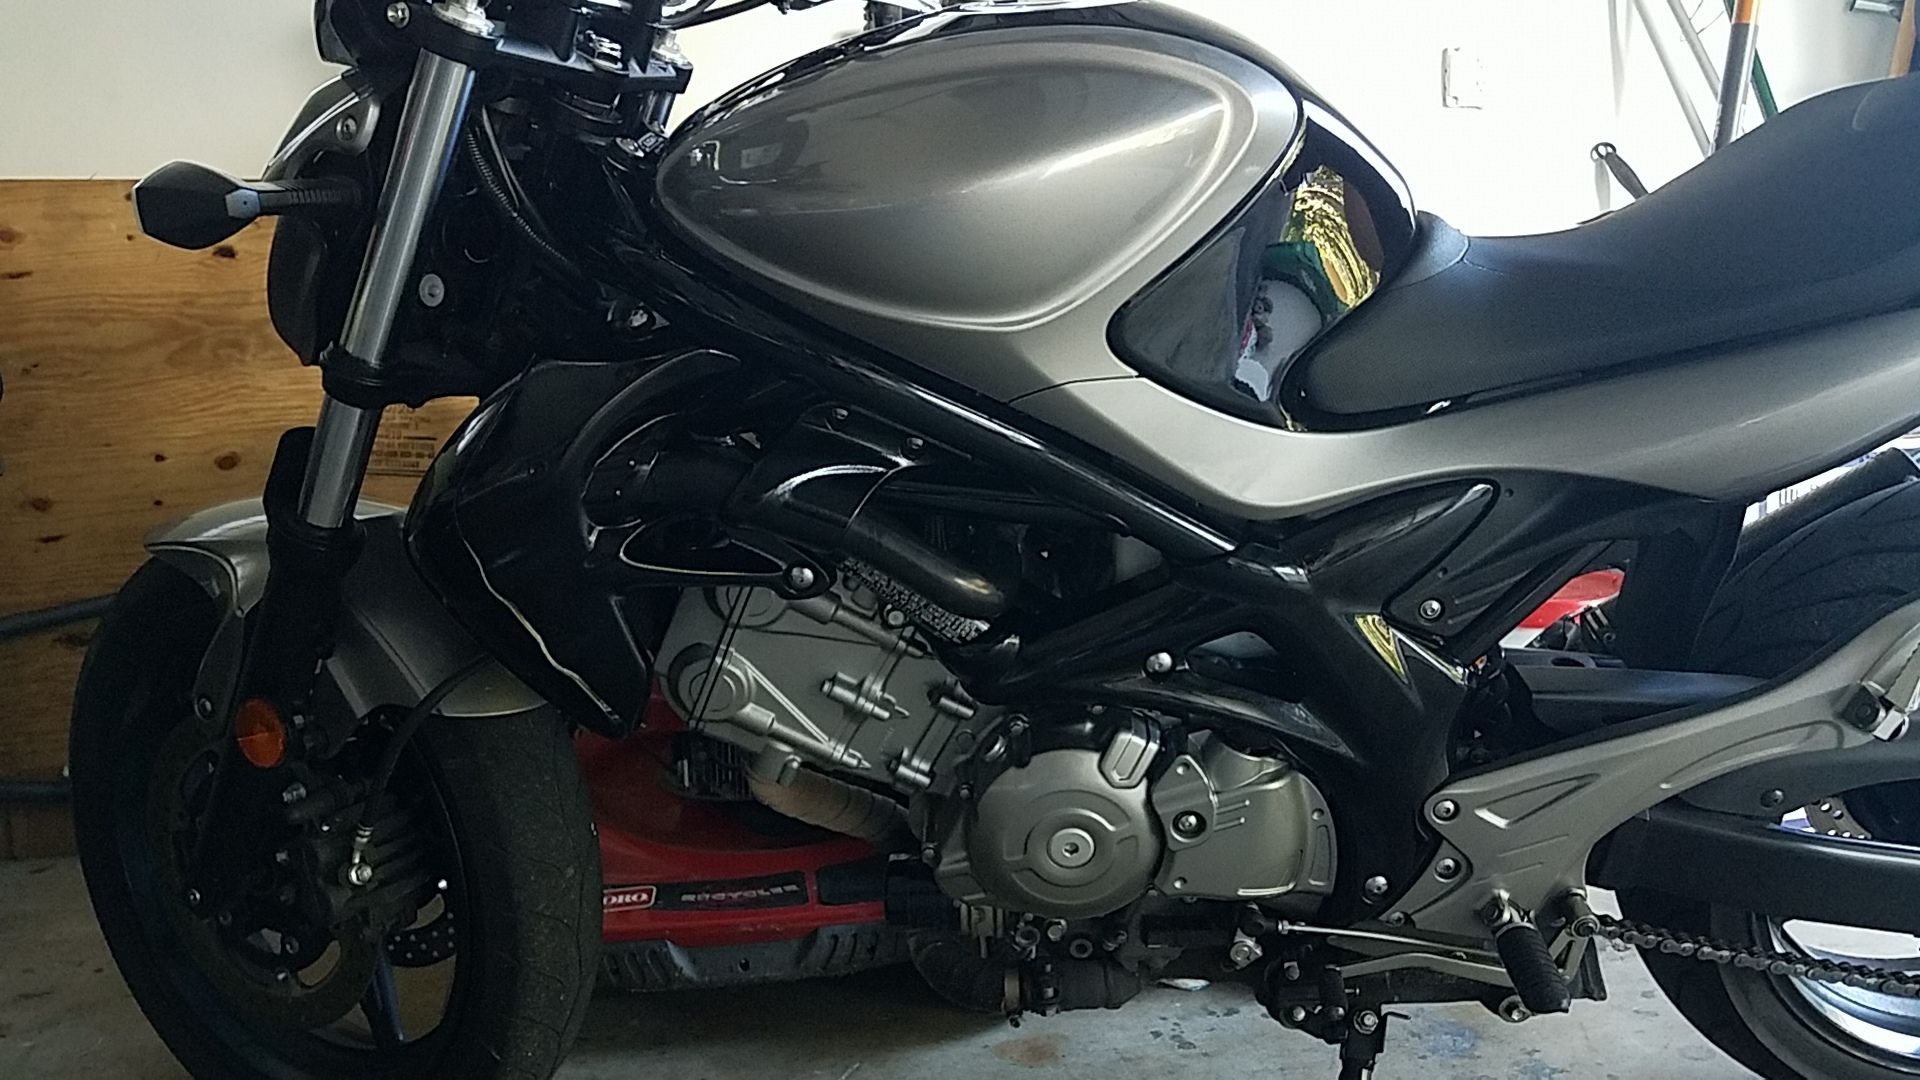 2013 suzuki SFV650 gladius motorcycle